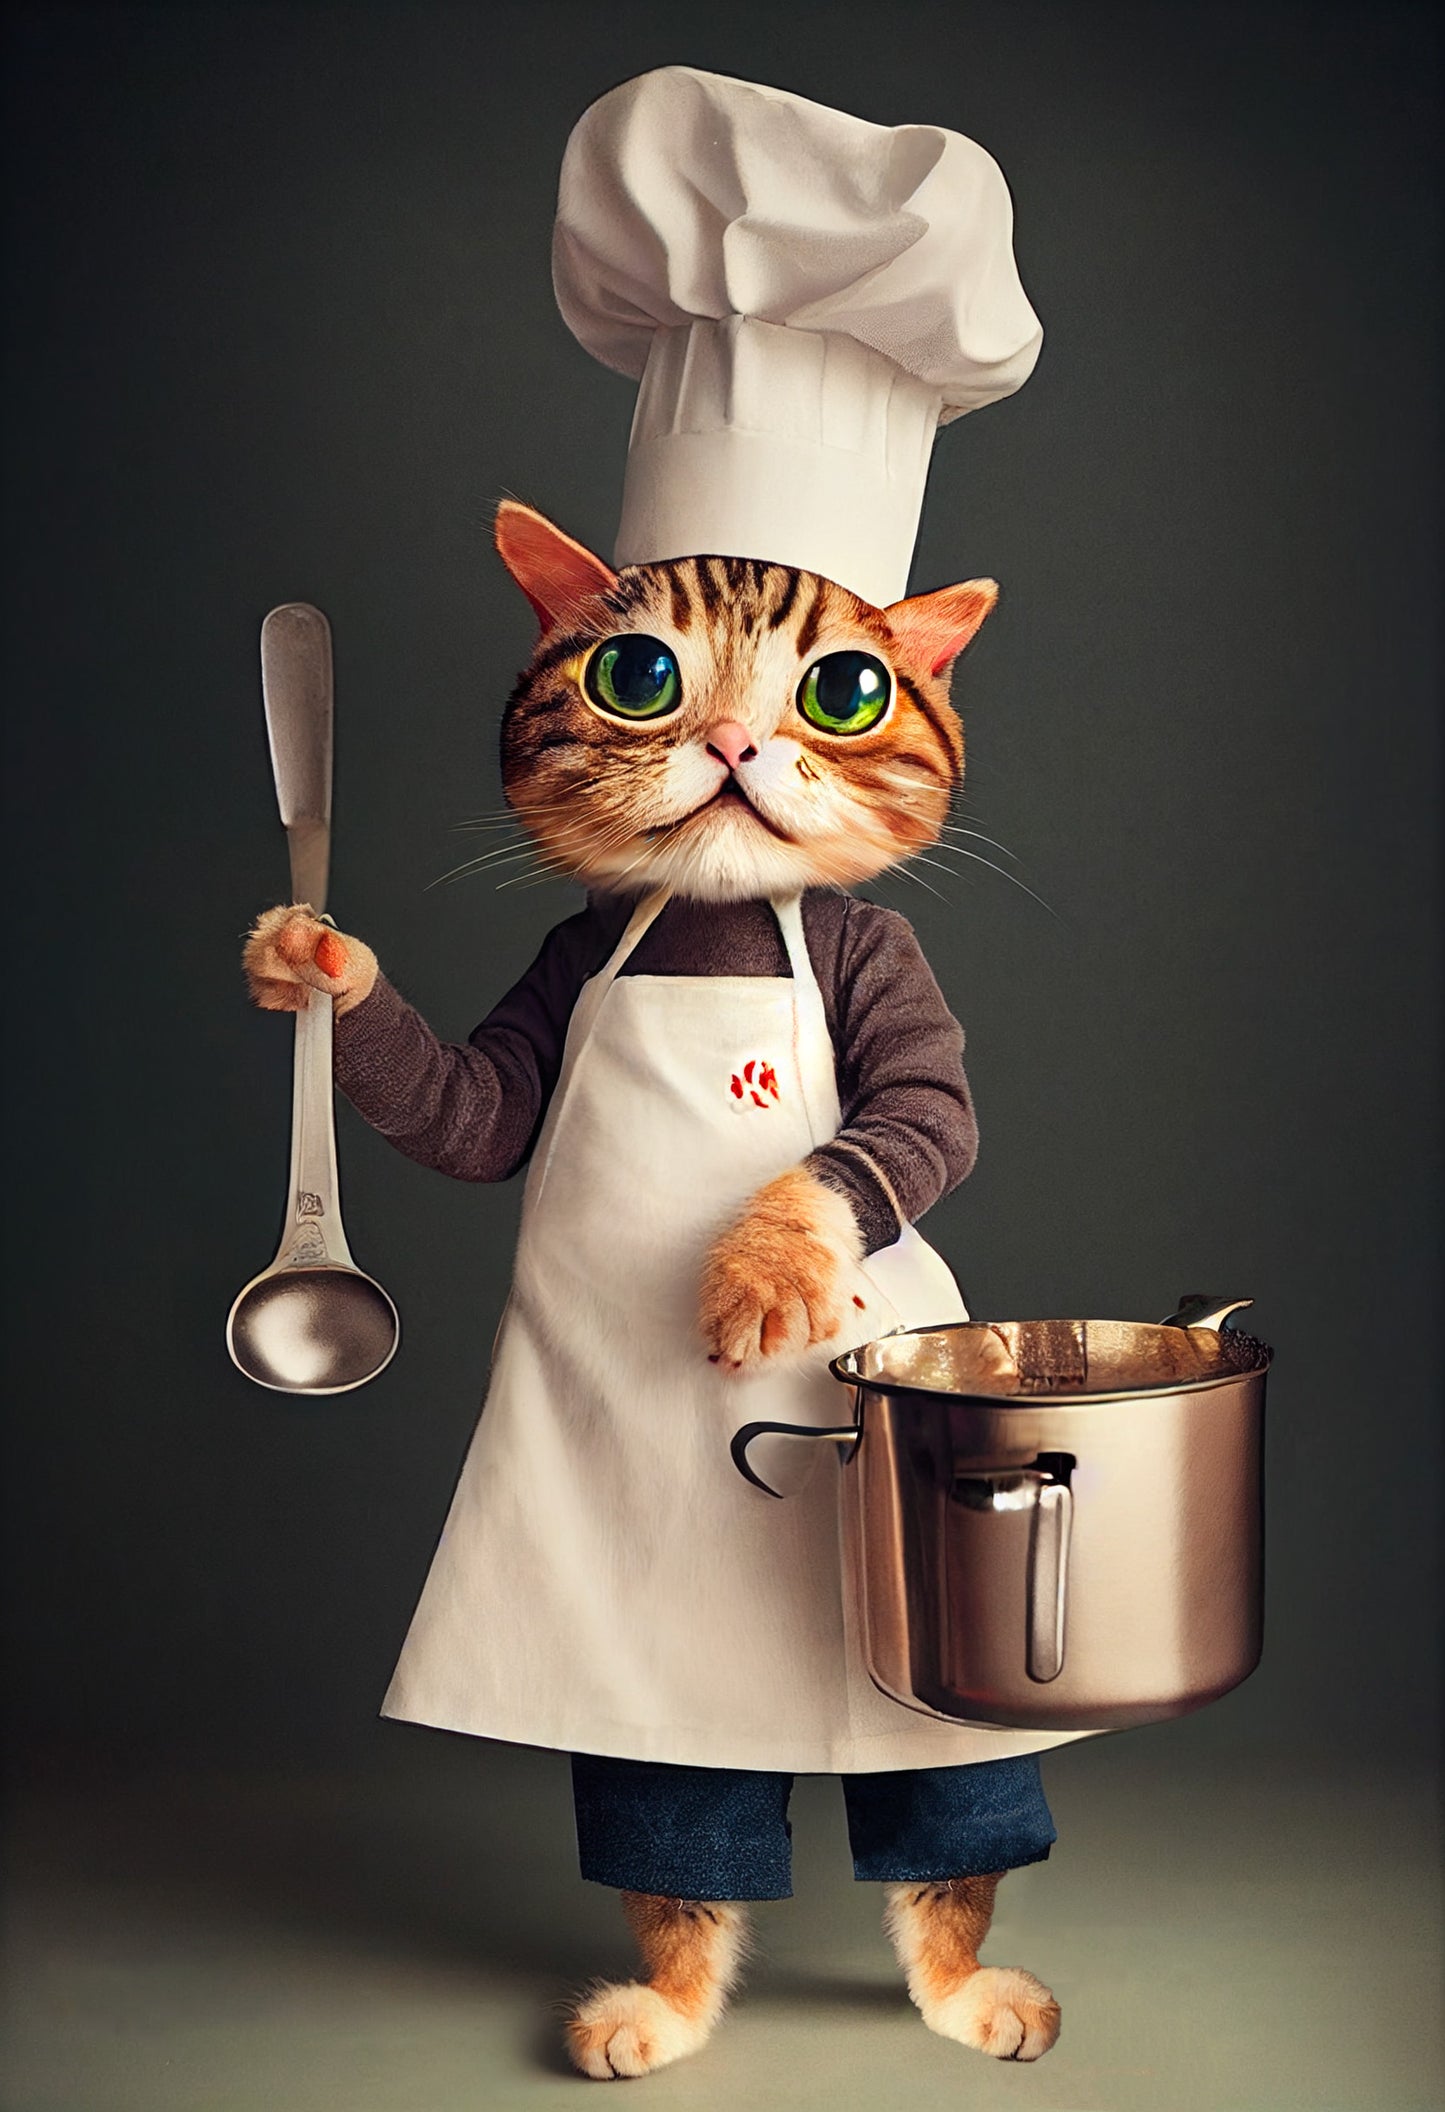 Un tableau mignon de face et de plein pieds d’un chat rayé noir et gris. Il a de grands yeux verts et il est vêtu d’un déguisement et d’une toque de cuisinier. Sur ce tableau original le chat,  il lève sa main gauche, il tient une louche en métal et sur sa main gauche une casserole.